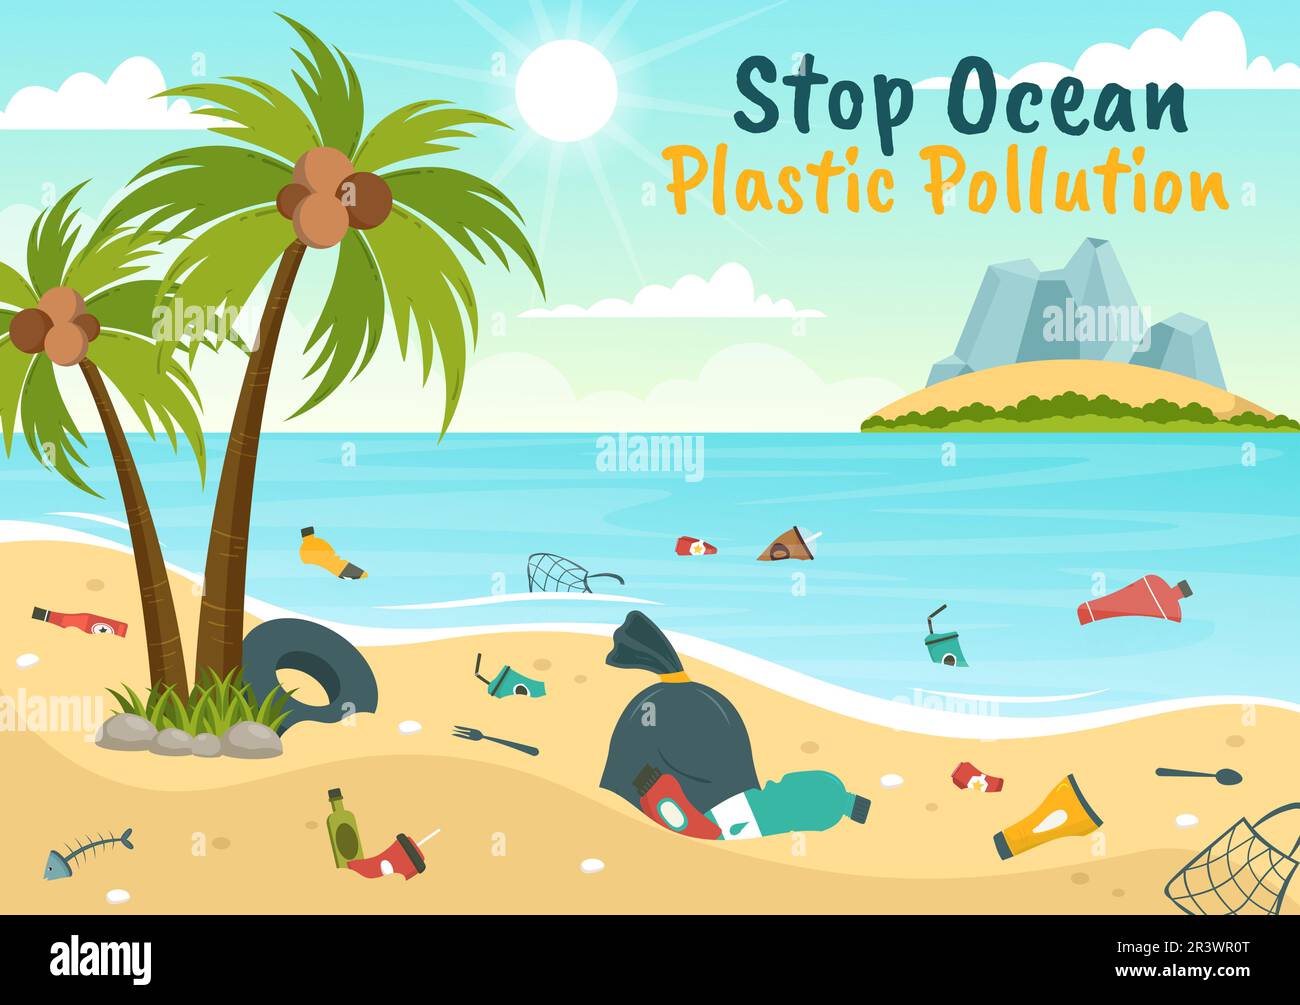 Stoppen Sie die Ozean-Plastik-Verschmutzungsvektor-Illustration mit Müll unter dem Meer wie ein Abfallsack, Müll und eine Flasche in flachen, handgezeichneten Schablonen Stock Vektor